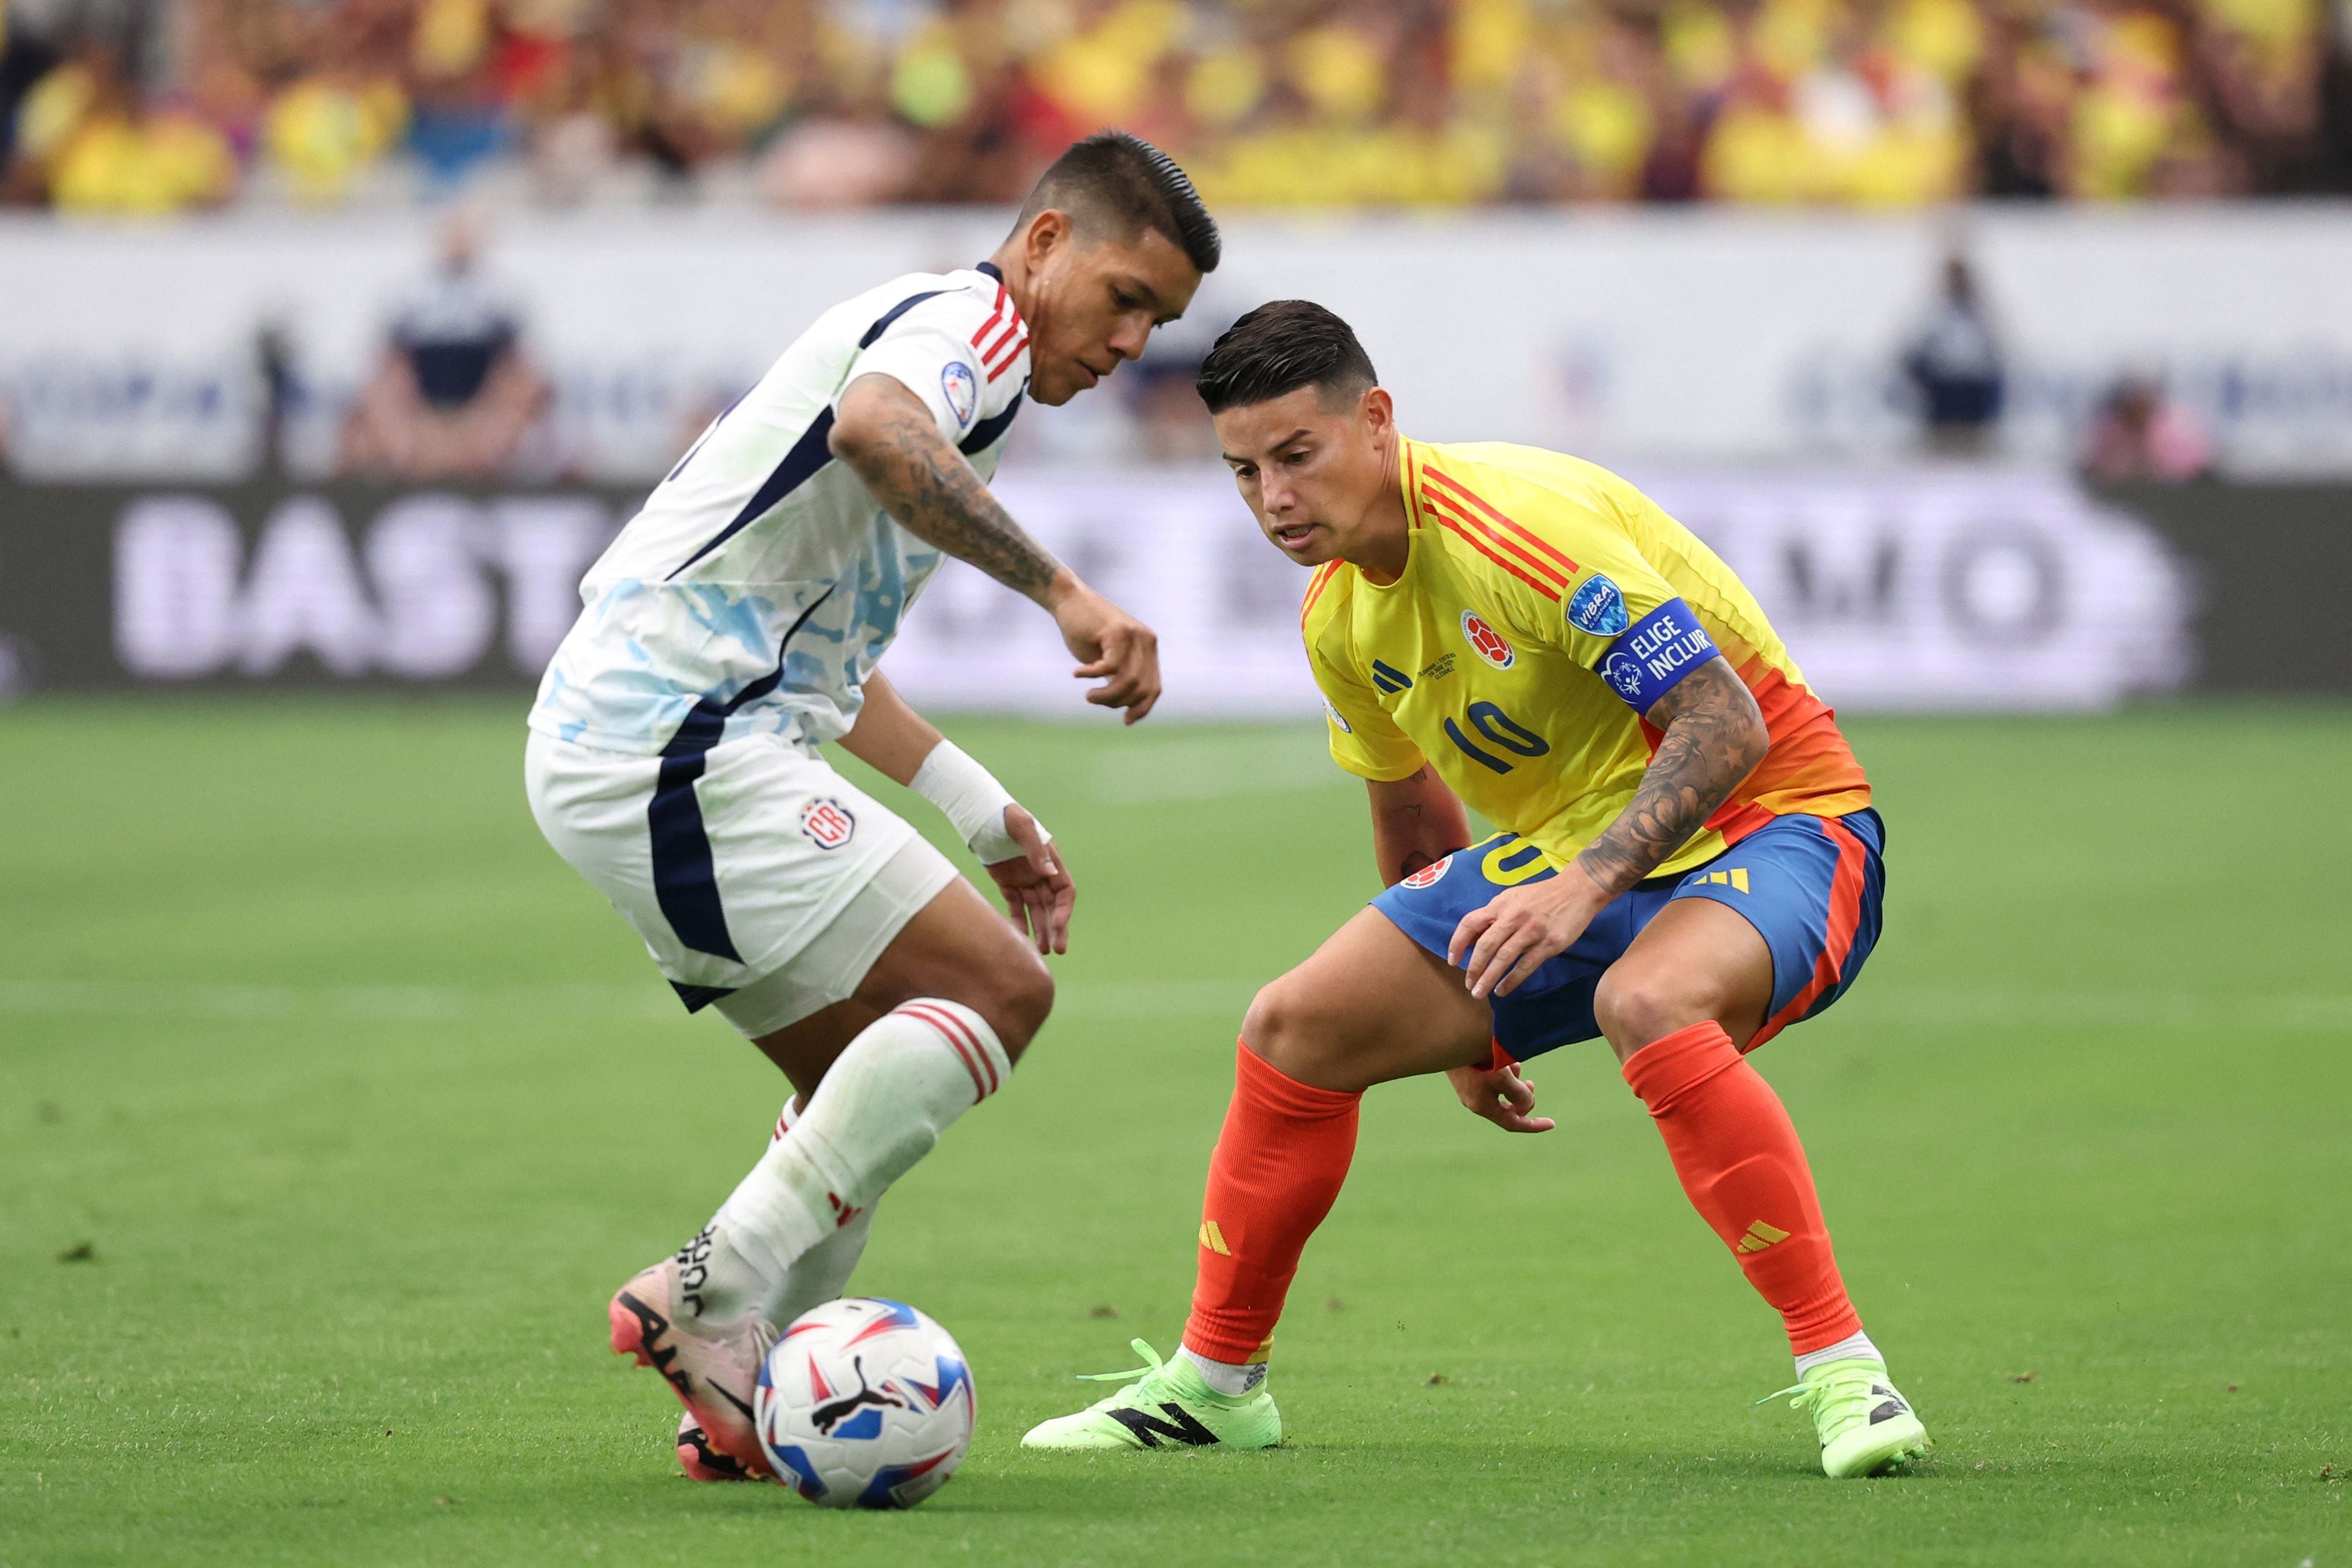 El volante nacional Orlando Galo controla el balón ante James Rodríguez, quien es uno de los jugadores históricos de la Selección de Colombia.  